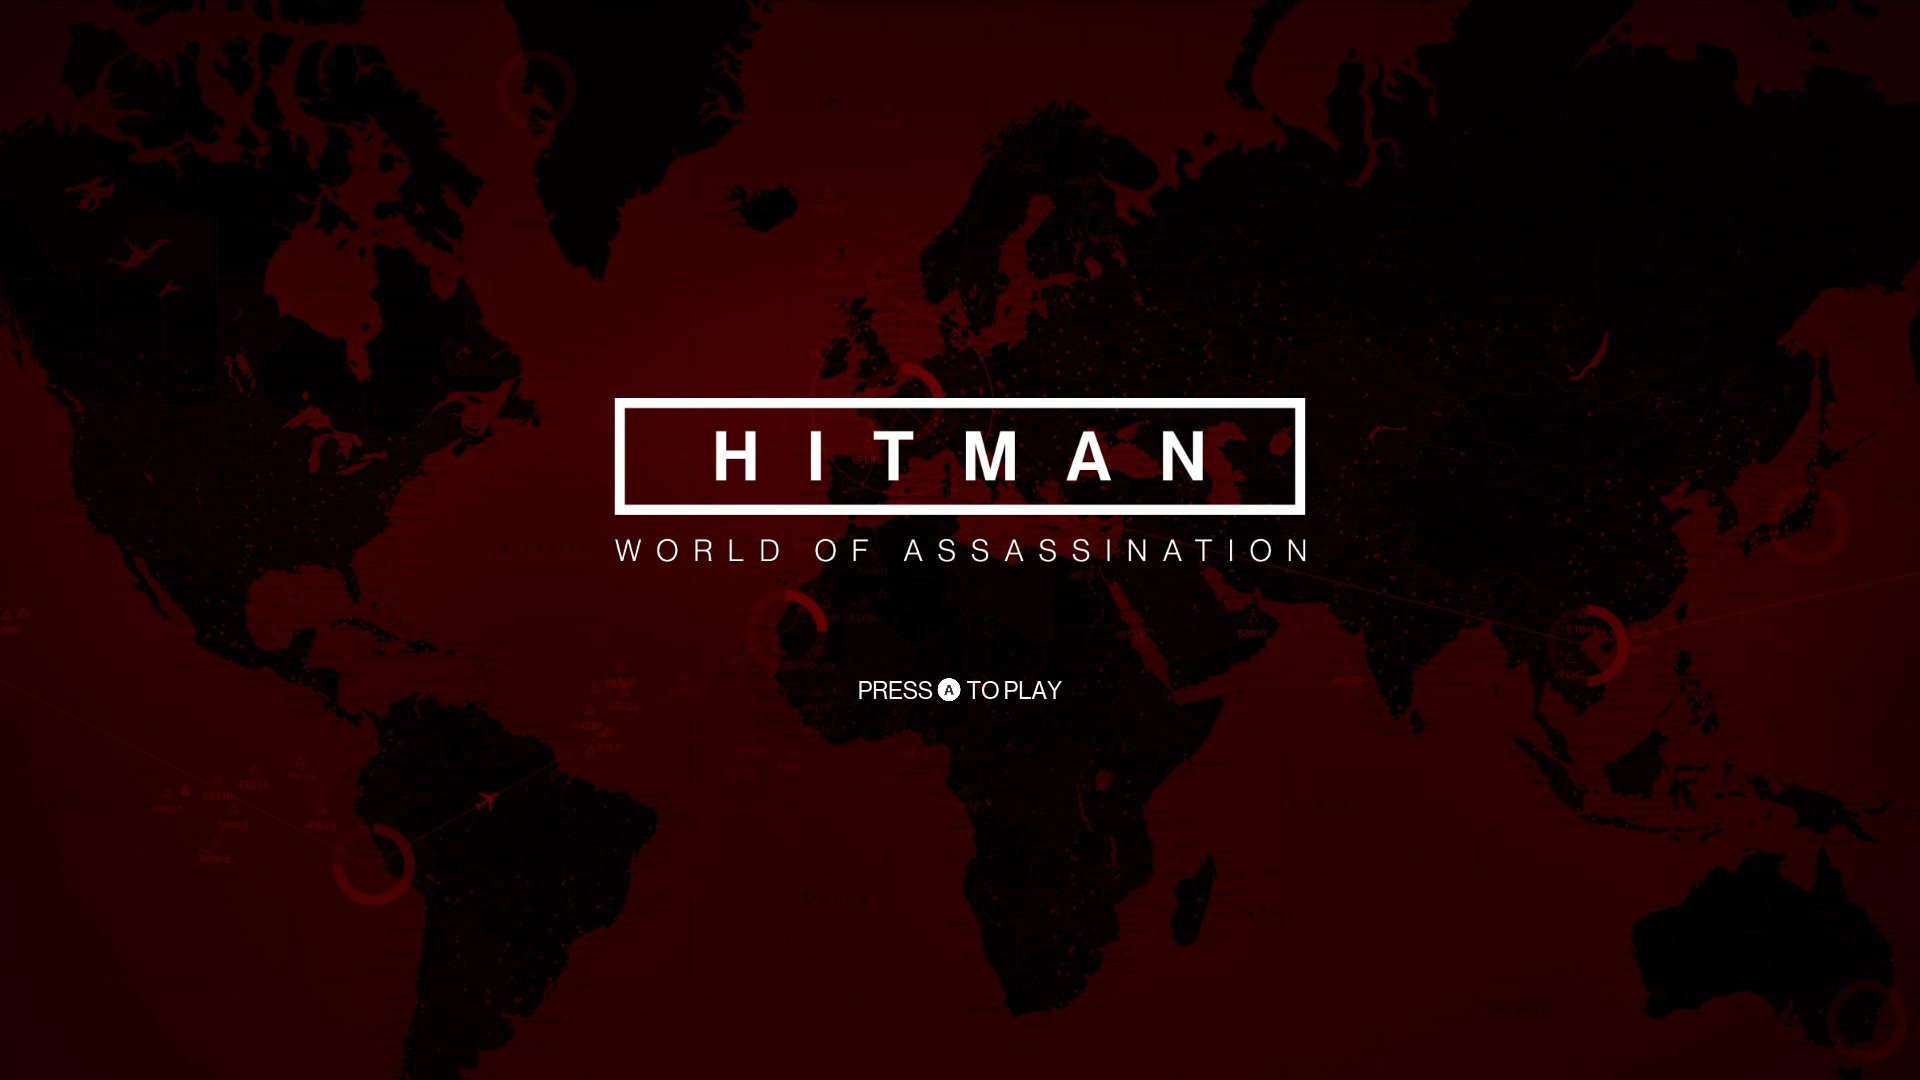 Steam Workshop::hitman 3 agent47 with Depth Parallax 21:9 3440